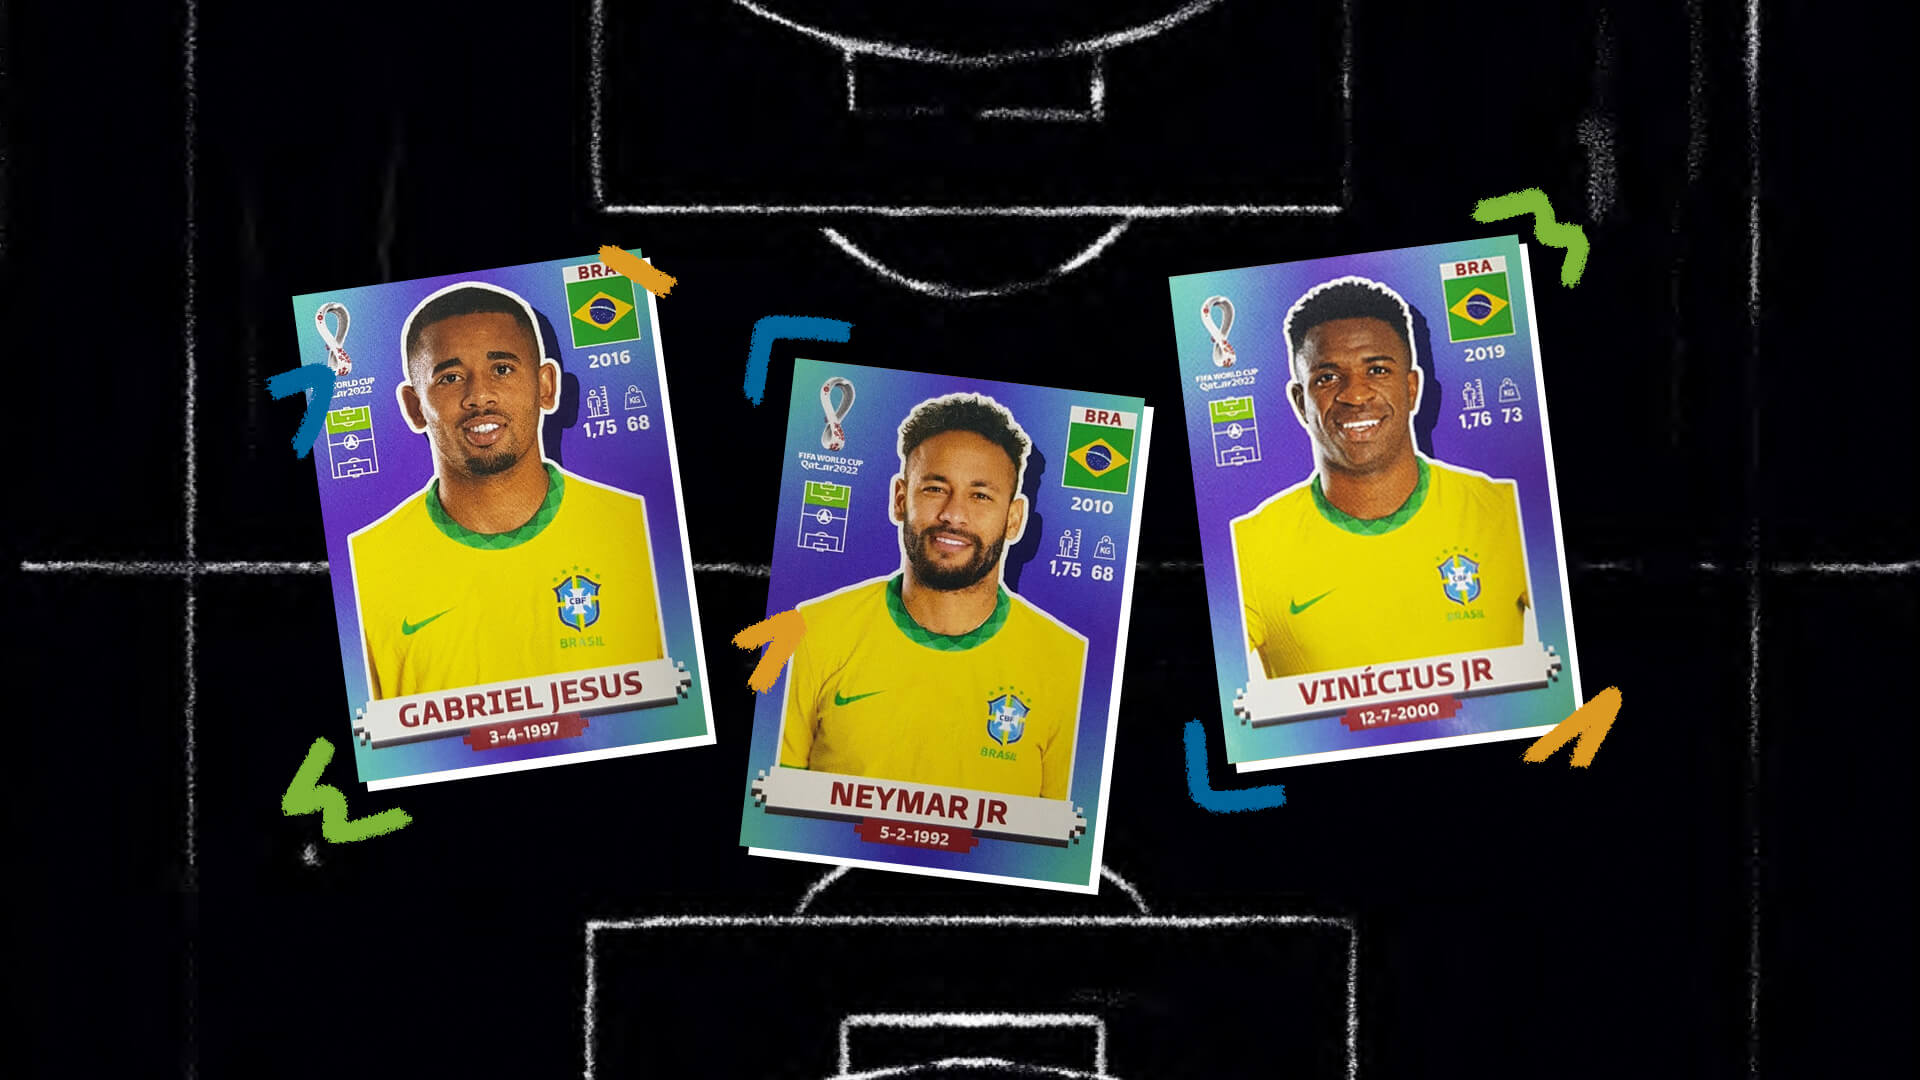 Álbum da copa antirracista: na imagem, figurinhas dos jogadores Gabriel Jesus, Neymar Jr e Vinícius Jr. Todos são homens negros e vestem a camiseta do Brasil. No fundo, um campo de futebol em preto e branco.